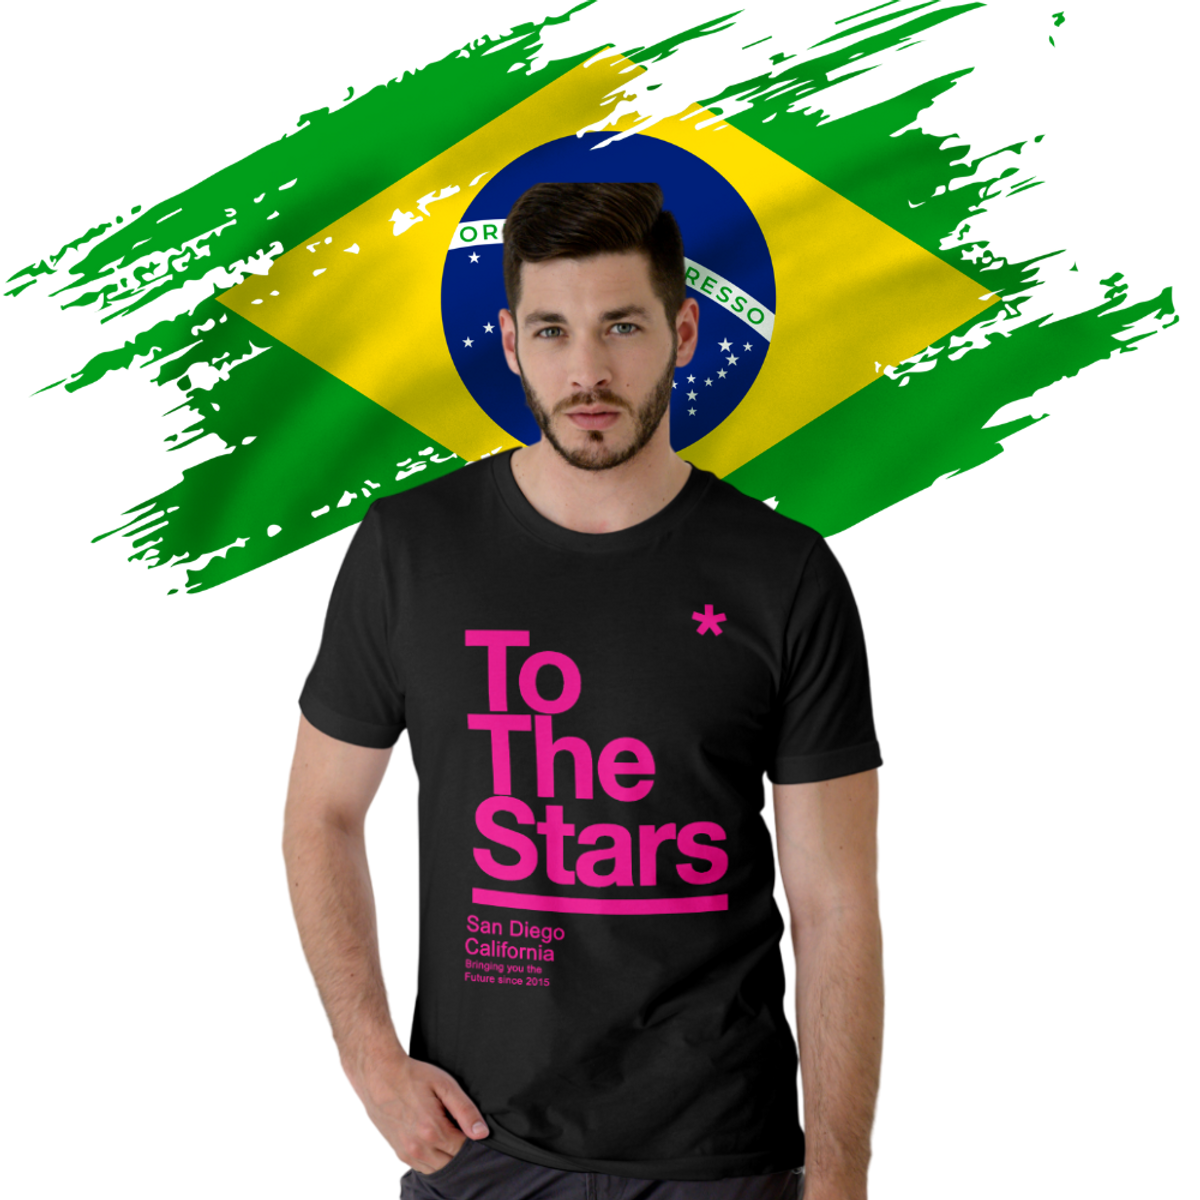 Nome do produto: Camiseta To The Stars Tom delonge blink 182 no  Brasil Prime